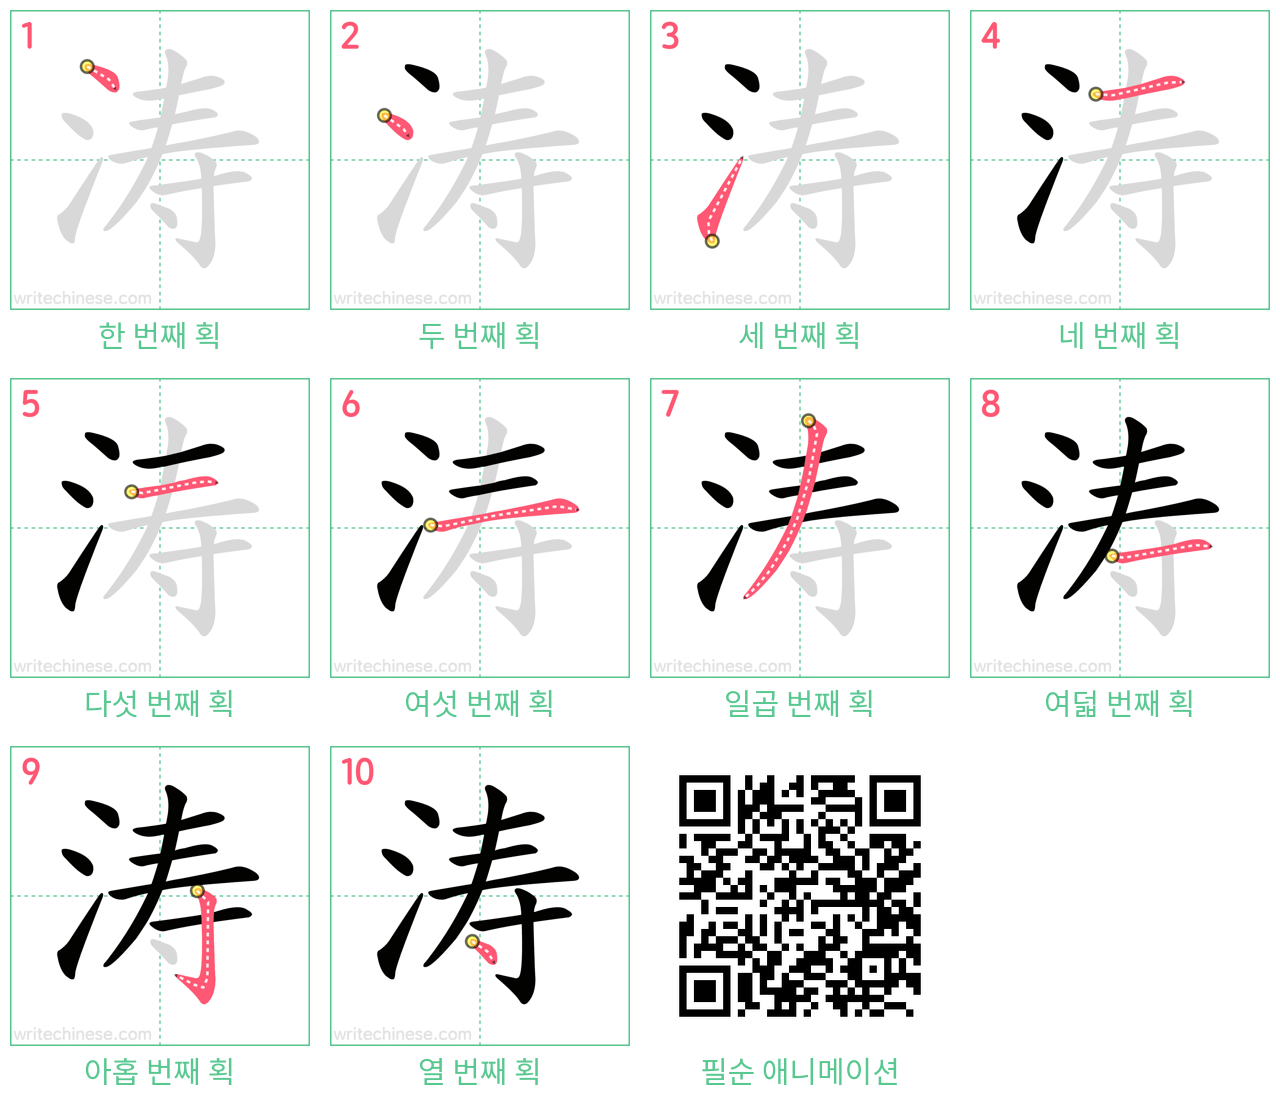 涛 step-by-step stroke order diagrams